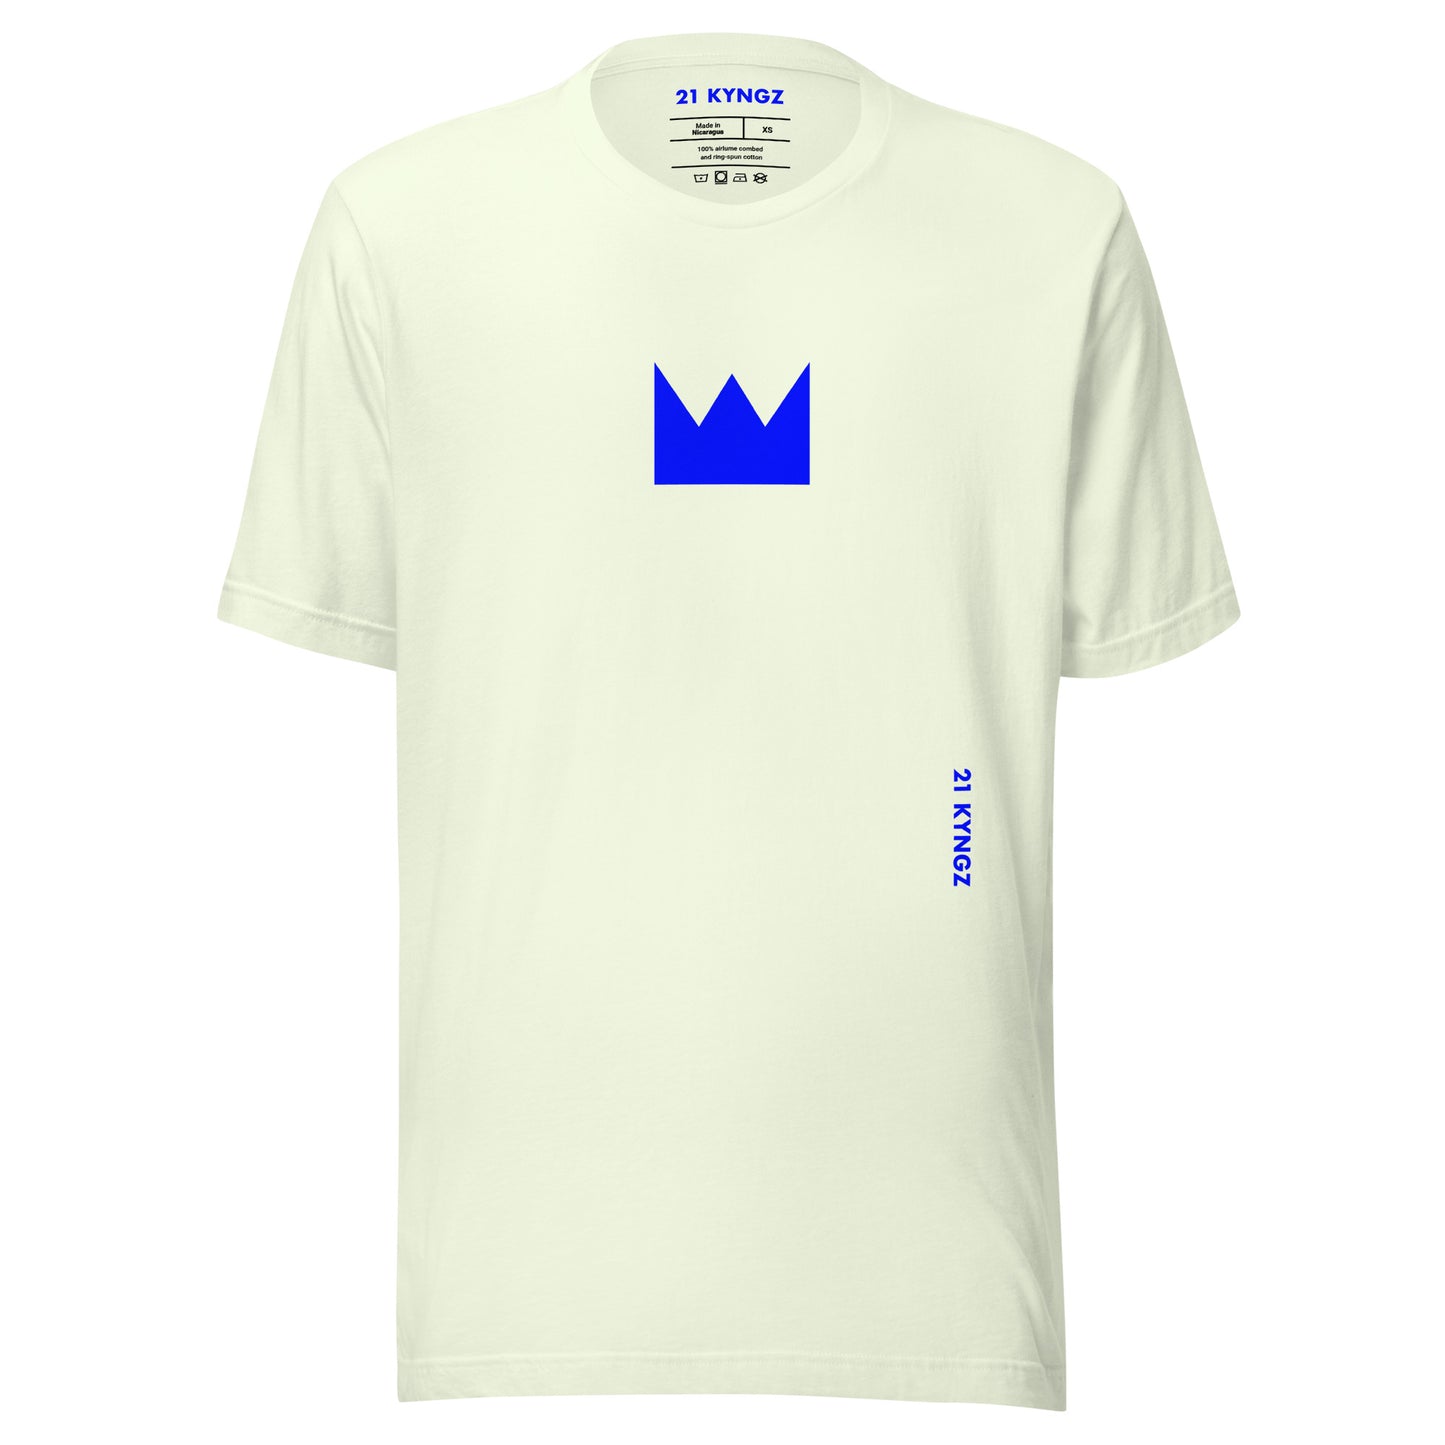 21 KYNGZ (Bl) Unisex t-shirt